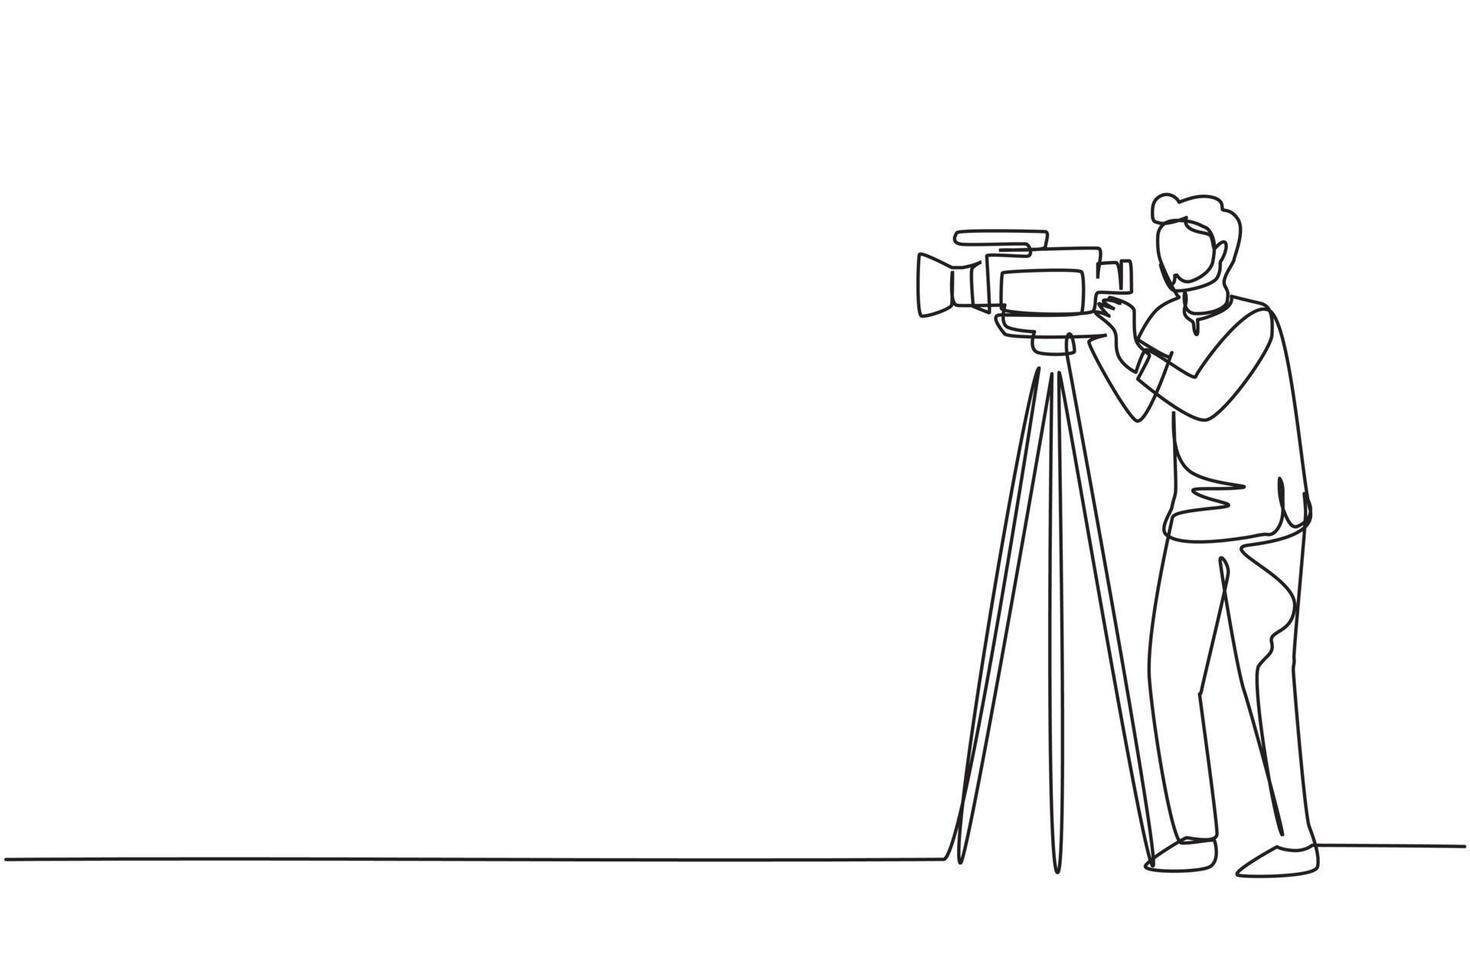 einzelne durchgehende strichzeichnung arabischer kameramann, bediener, videofilmer, der mit der kamera steht. Aufnahme einer Filmproduktion, Live-Übertragung von Nachrichten oder Fernsehsendungen. eine Linie zeichnen Design-Vektor-Illustration vektor